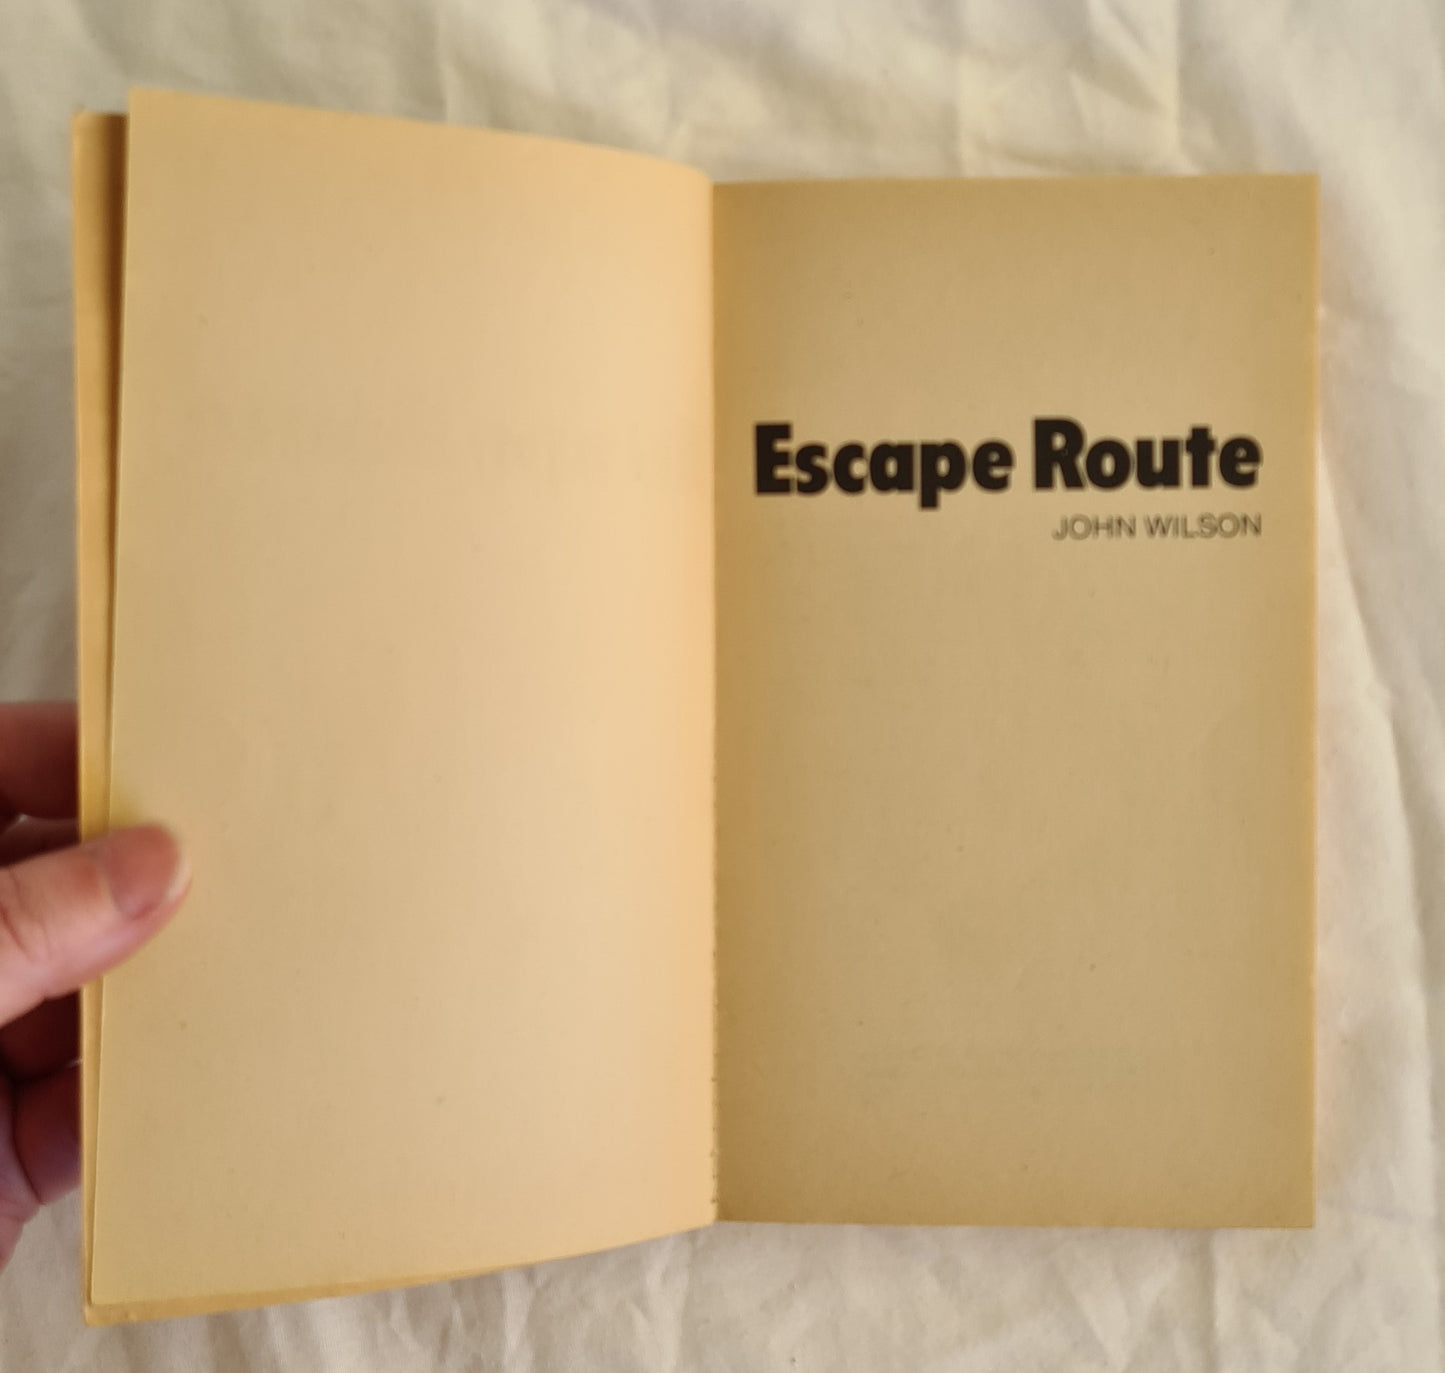 Escape Route by John Wilson